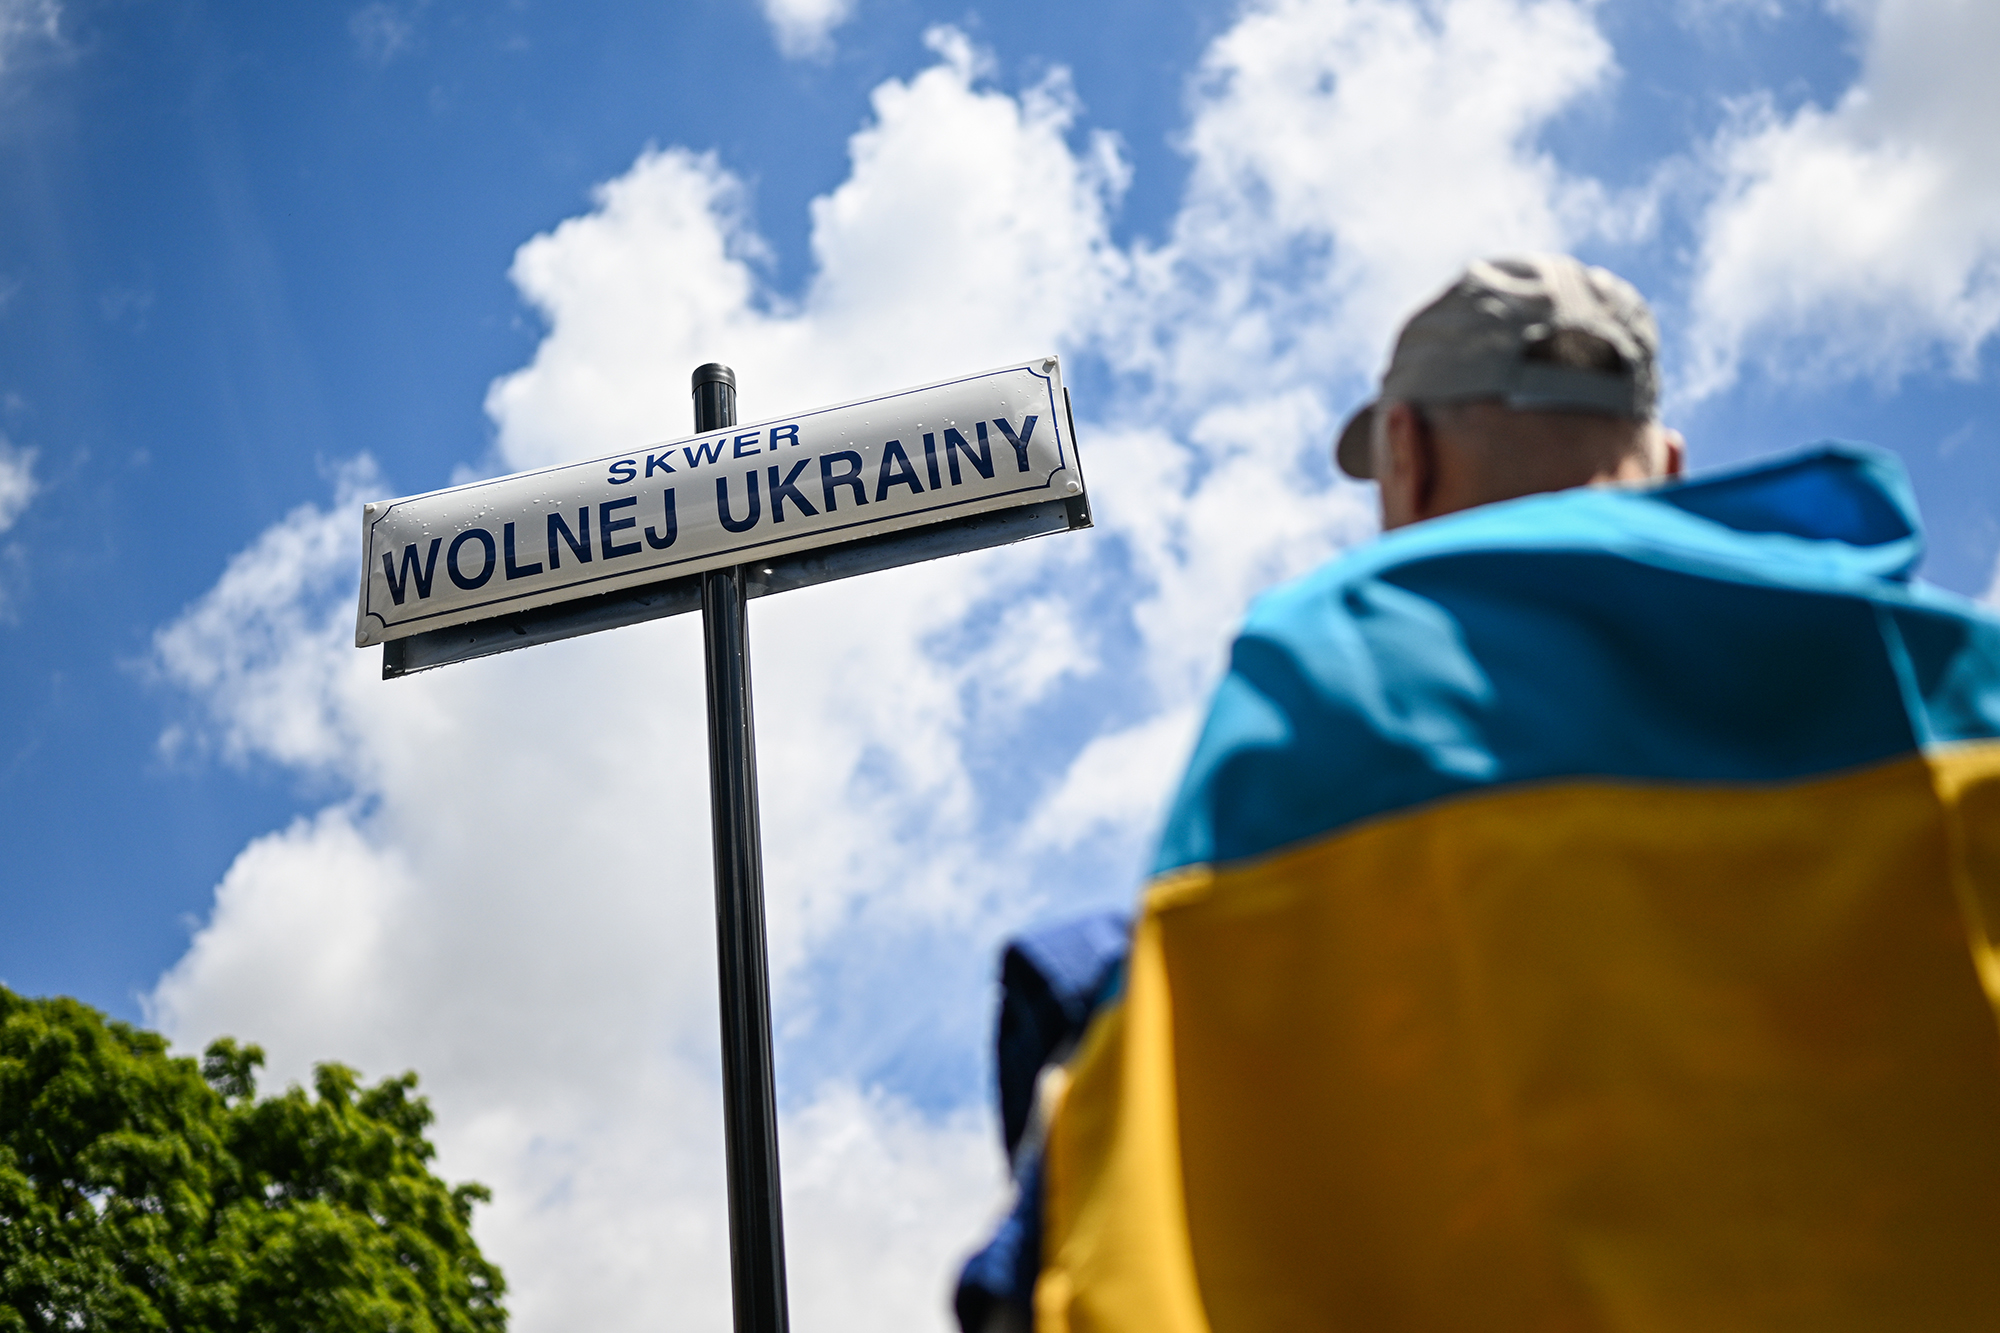 Как изменятся отношения между украинцами и поляками после войны: опрос